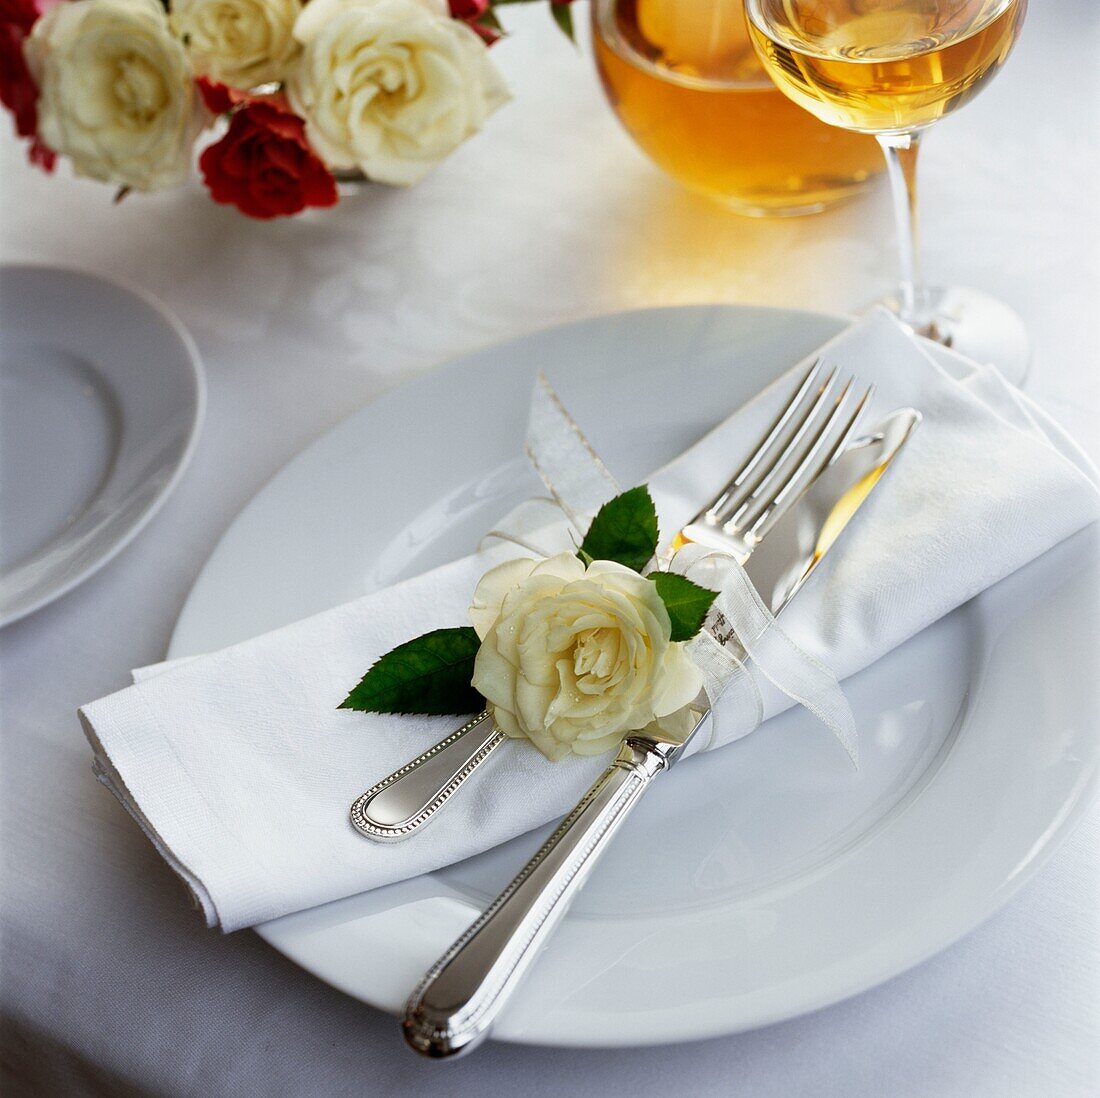 Einzelne Rose mit Besteck und Serviette auf einem Gedeck